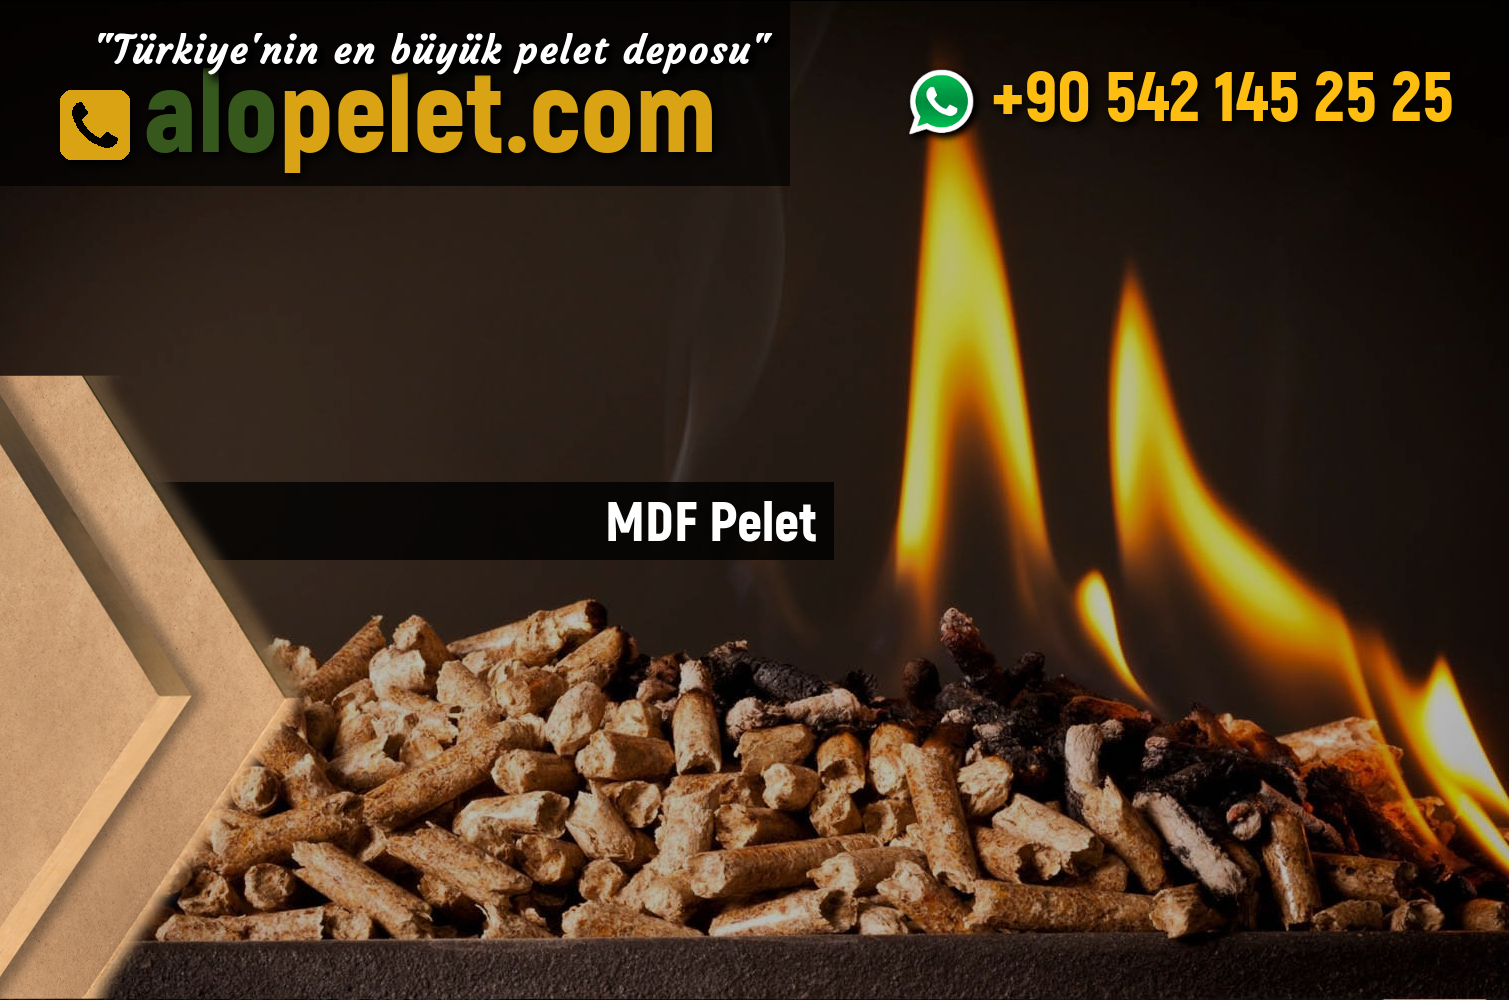 MDF Peleti - alopelet.com